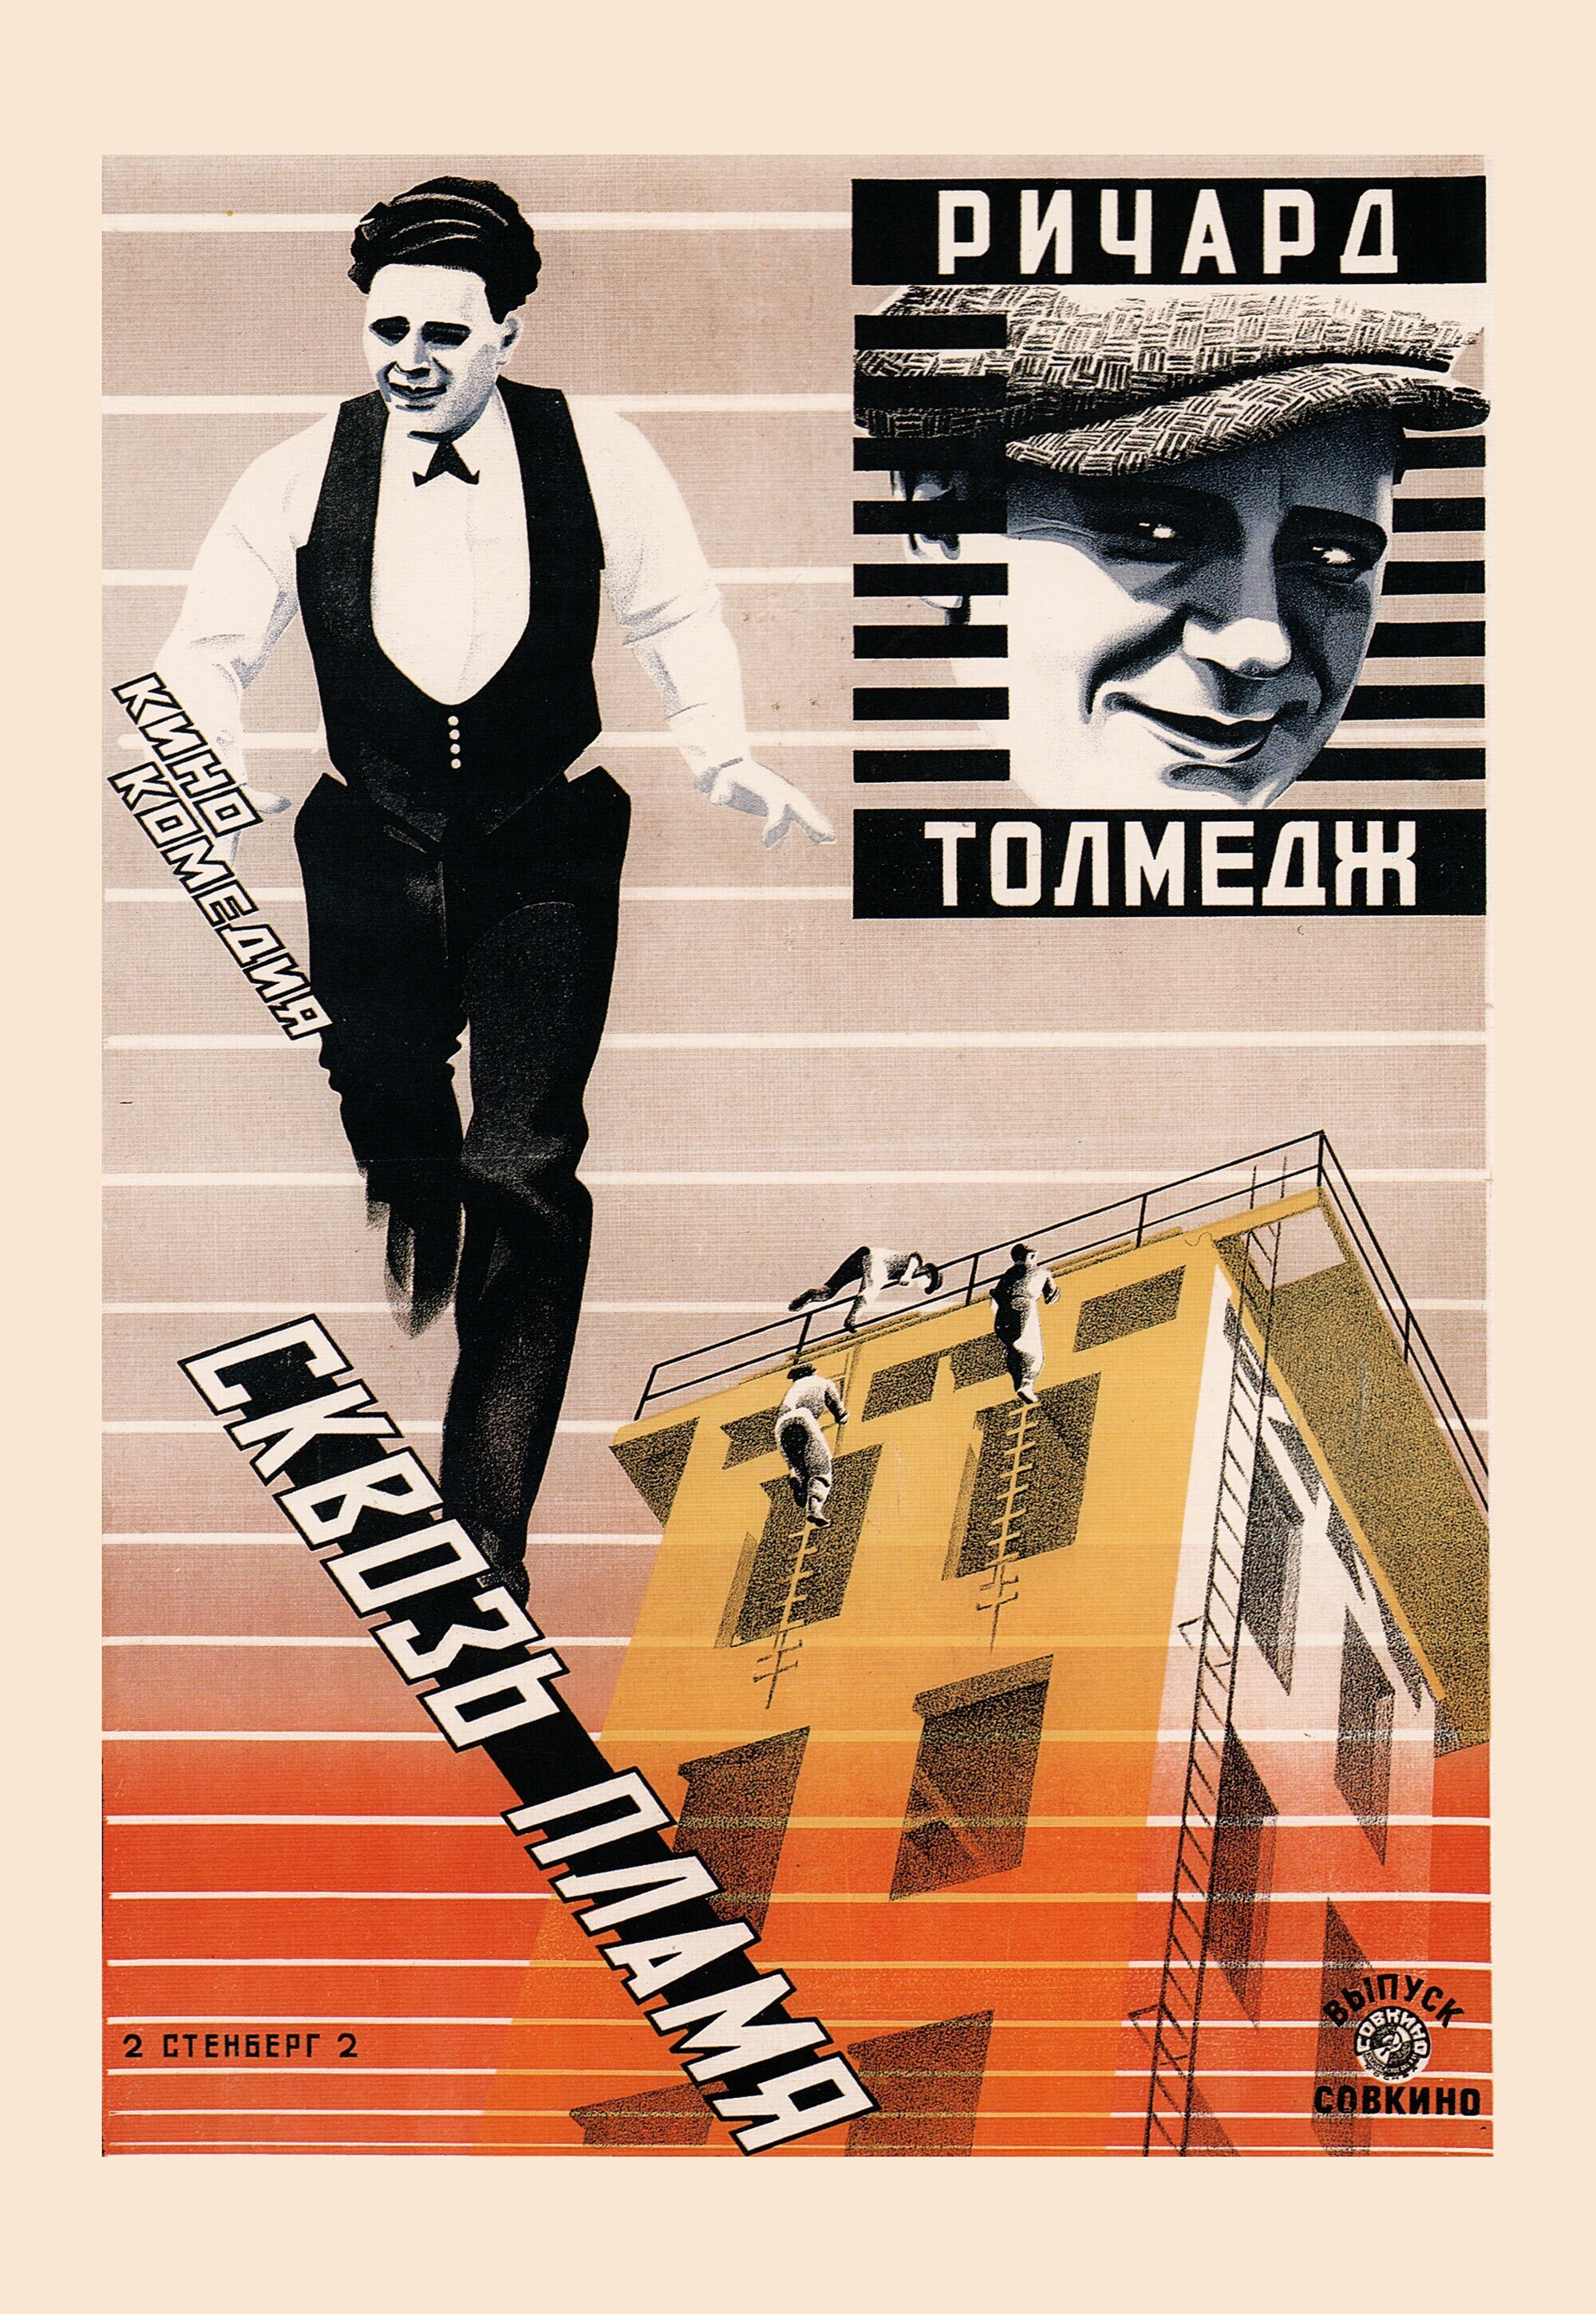 Сквозь пламя, 1923 год, режиссёр Джек Нельсон, плакат к фильму, авторы Владимир и Георгий Стенберги (авангардное советское искусство, 1920-е)